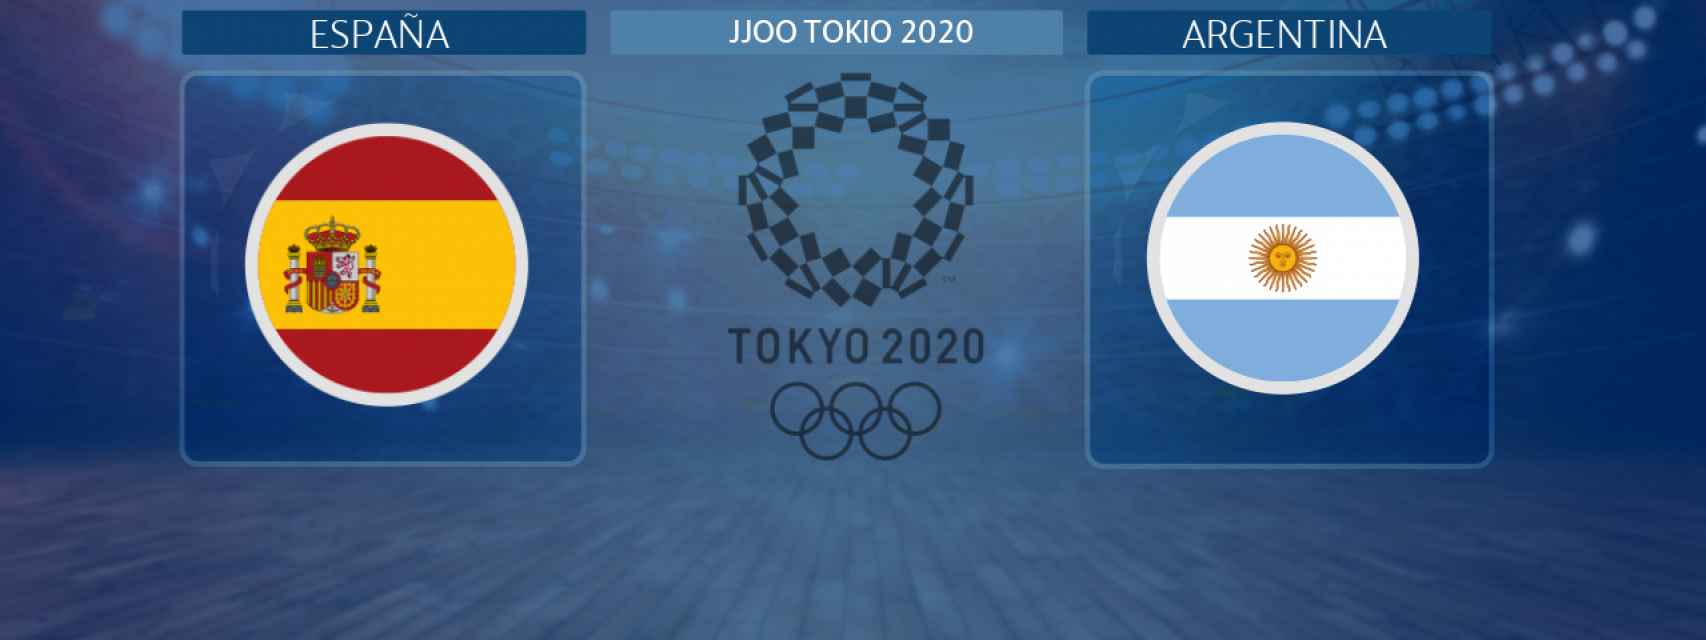 España - Argentina, partido de los JJOO de Tokio 2020